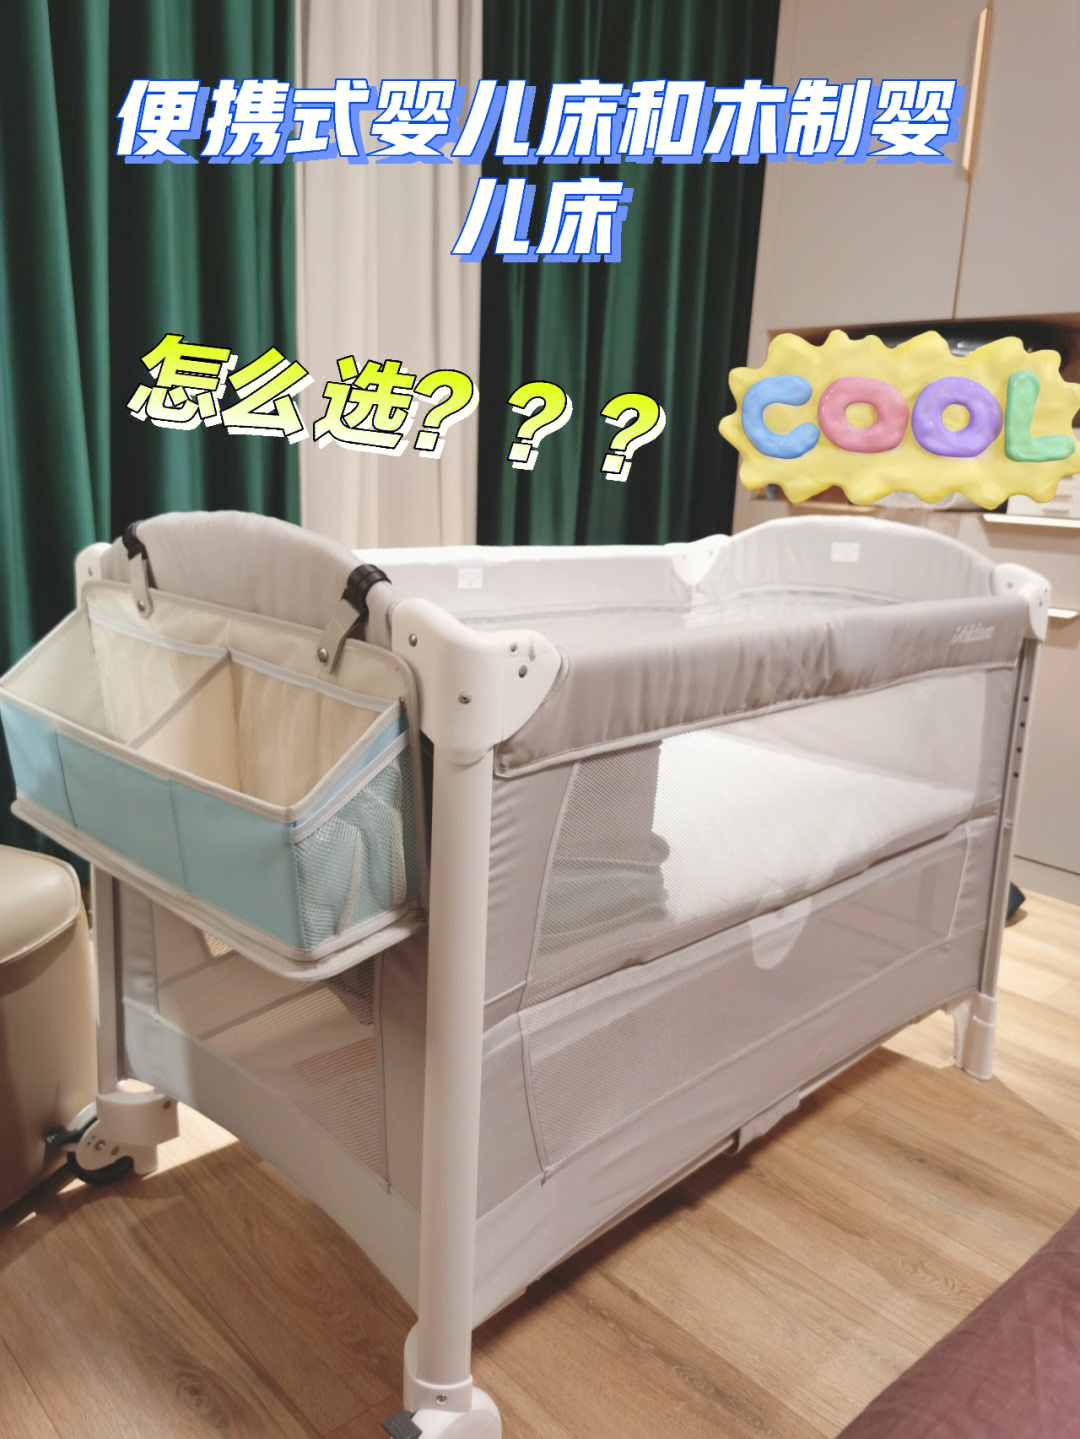 可收纳婴儿床今天收到啦,一个人操作安装不是问题,收起来装进专门的